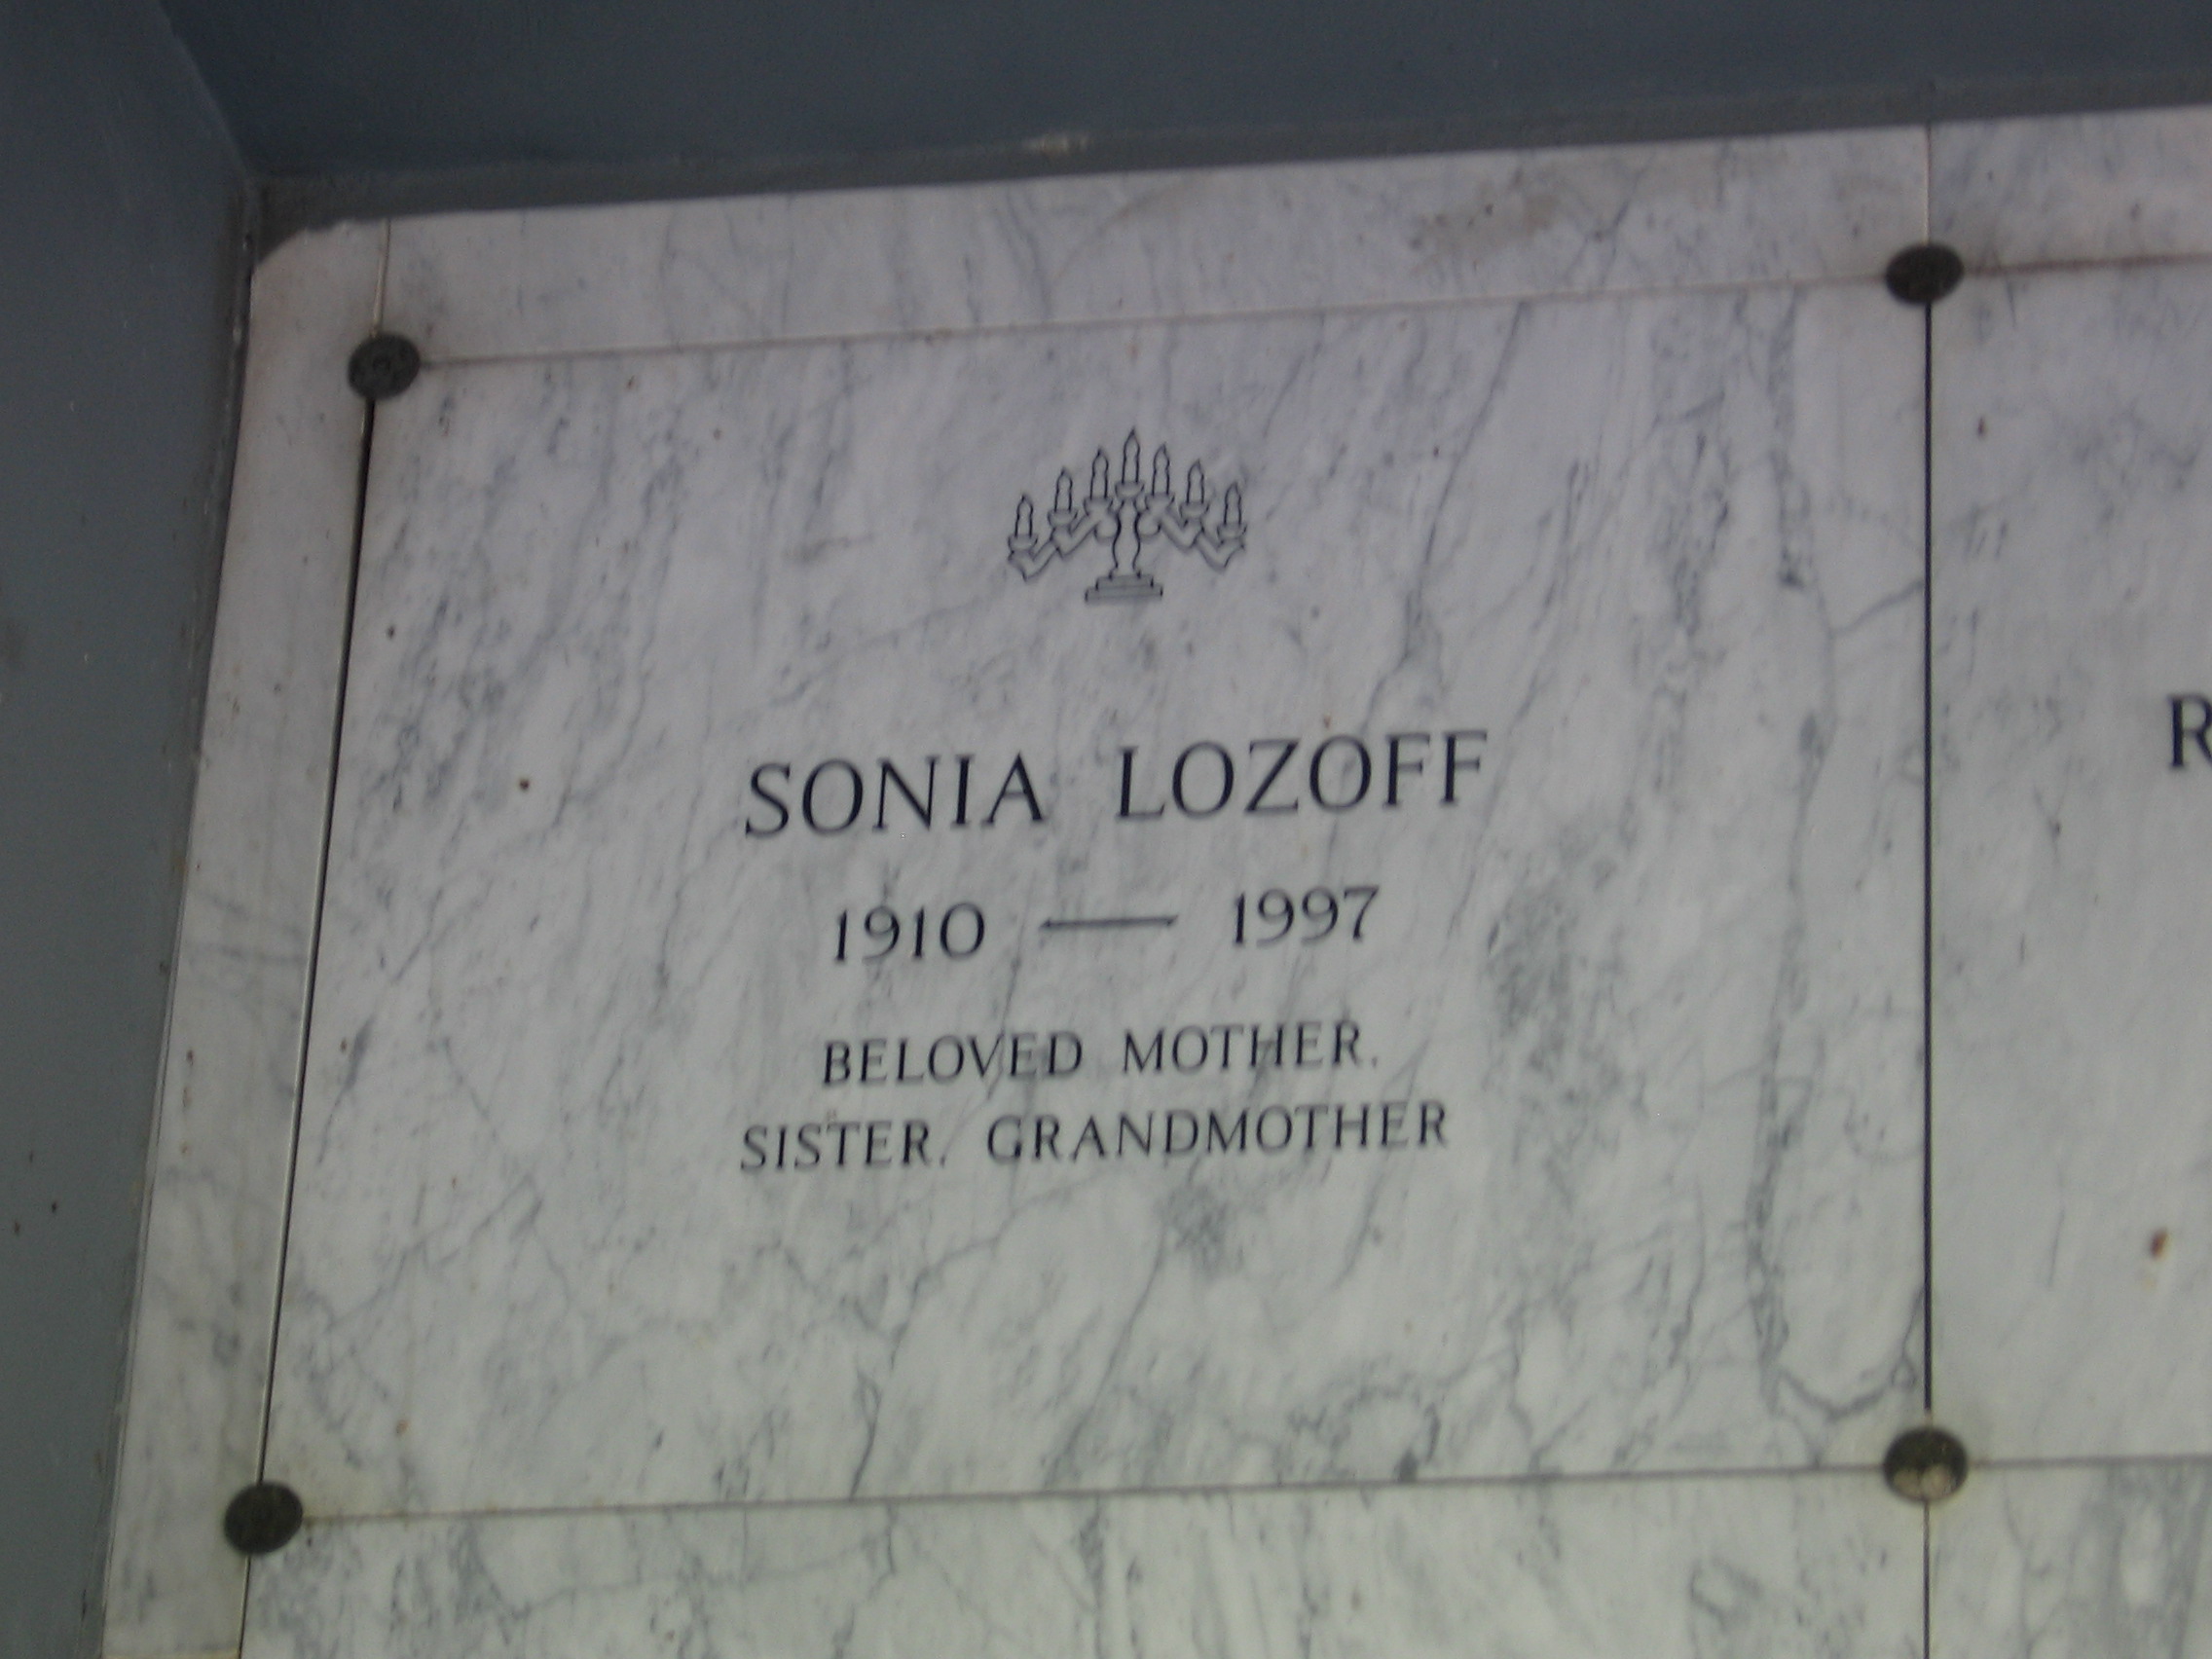 Sonia Lozoff